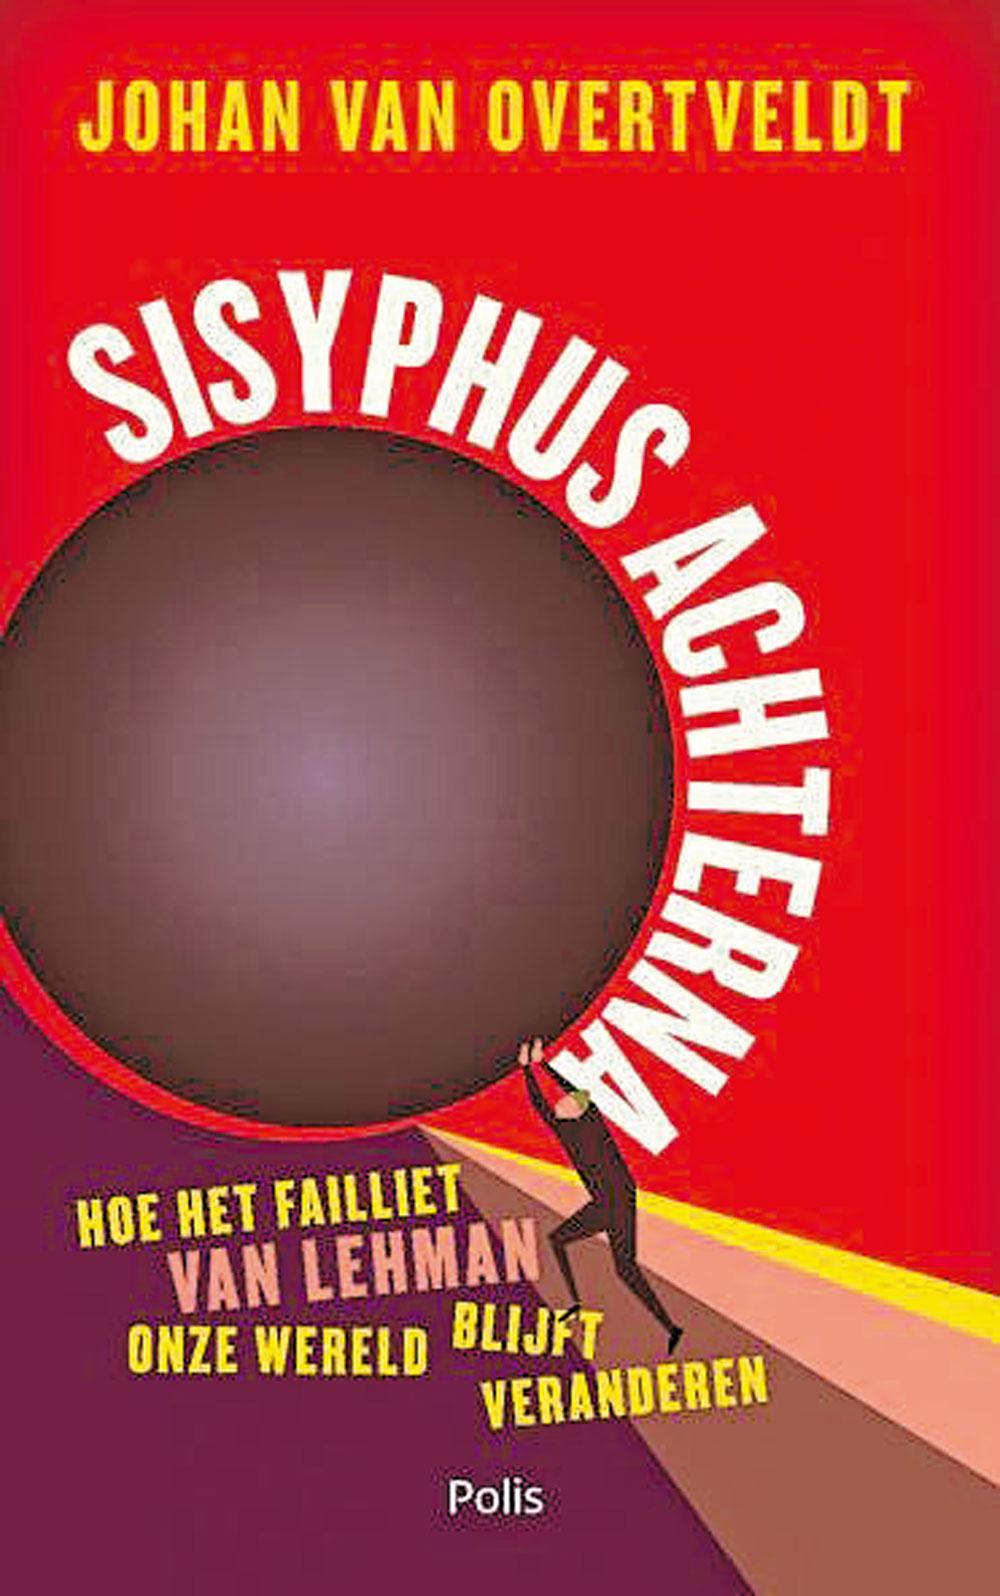 Johan Van Overtveldt, Sisyphus achterna. Hoe het failliet van Lehman onze wereld blijft veranderen, Uitgeverij Polis, 275 blz., 19,99 euro.